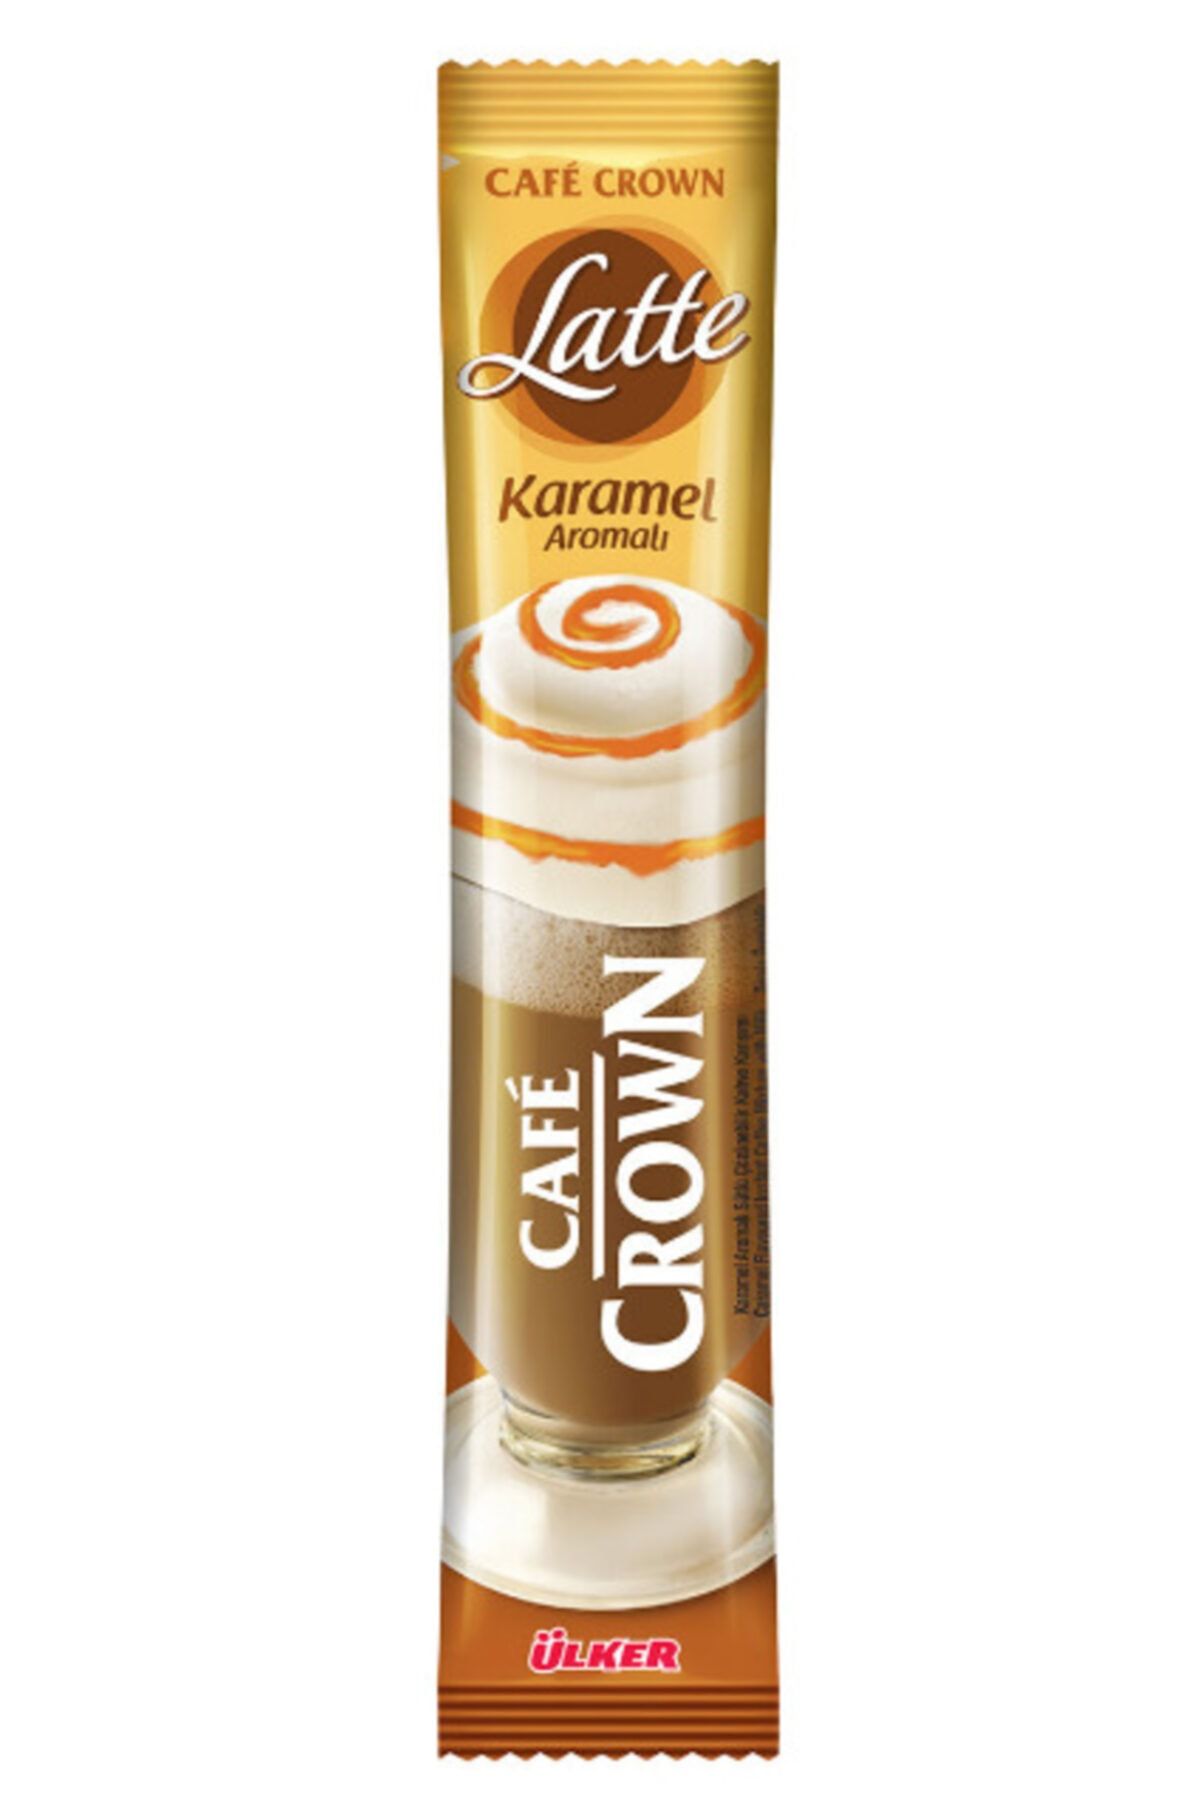 Ülker Cafe Crown Karamel Aromalı Latte 24 X 17 g